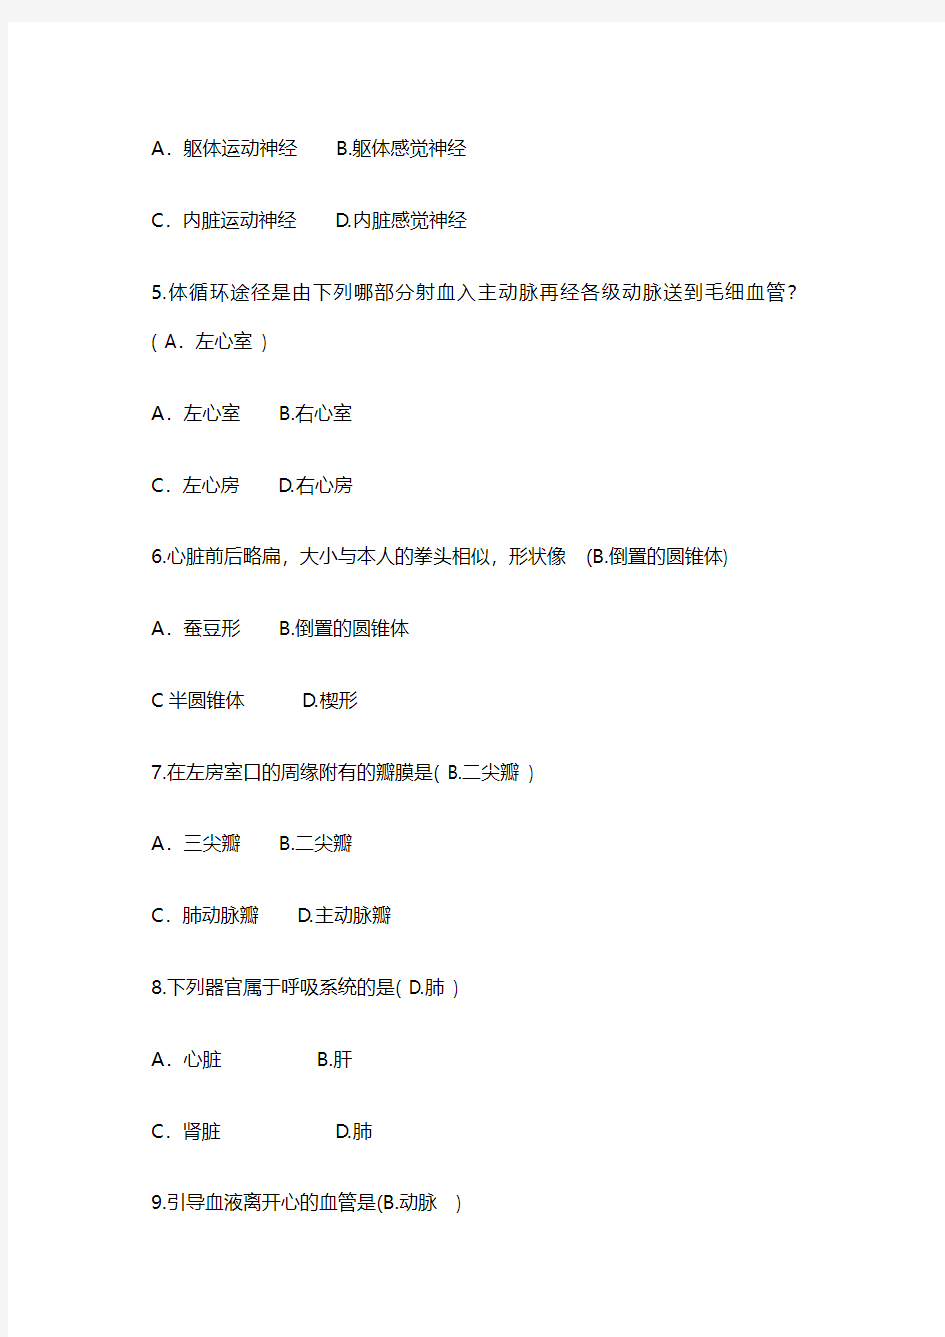 2014年山东聊城阳谷县人事代理专业技术人员招考笔试试题